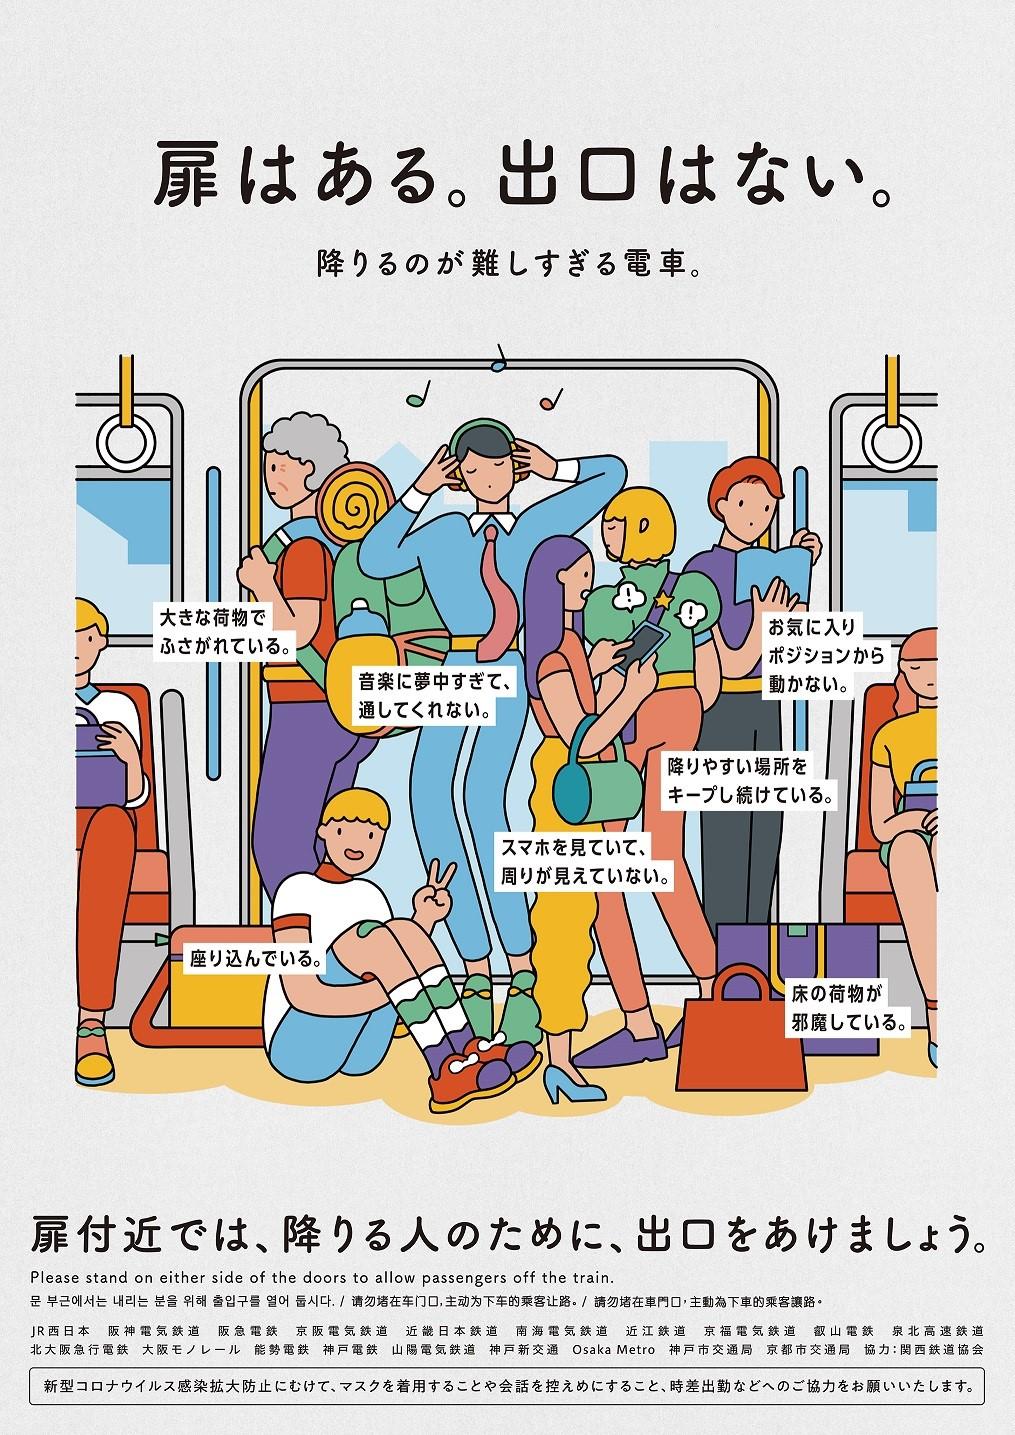 関西の鉄道事業者19社局による共同マナーキャンペーン 車内での扉付近のマナー を共通テーマとしてポスターを掲出します Osaka Metro